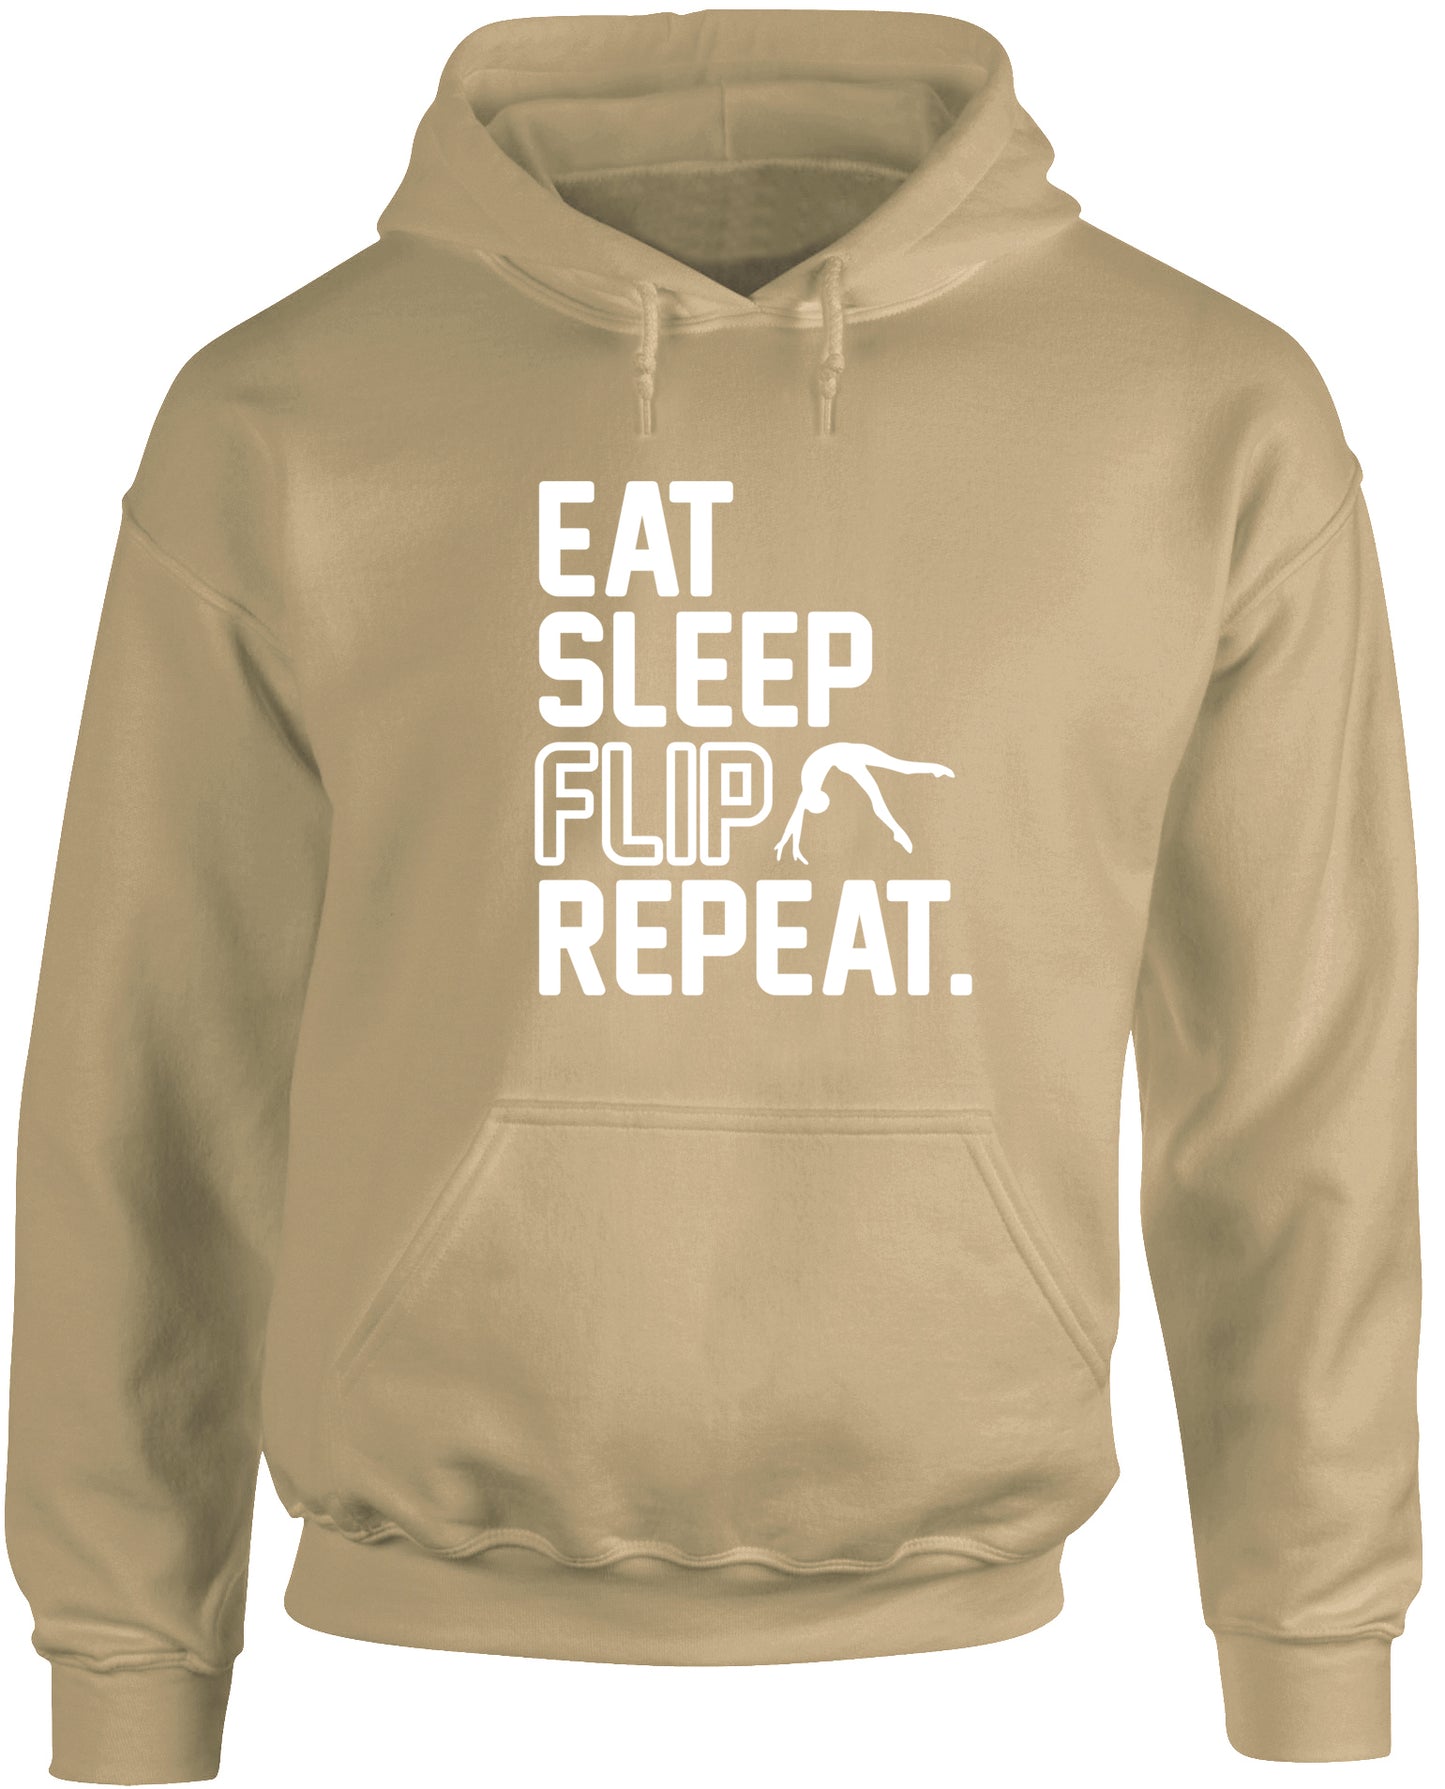 Eat Sleep Flip Repeat Gymnastics Gymnast unisex Hoodie hooded top